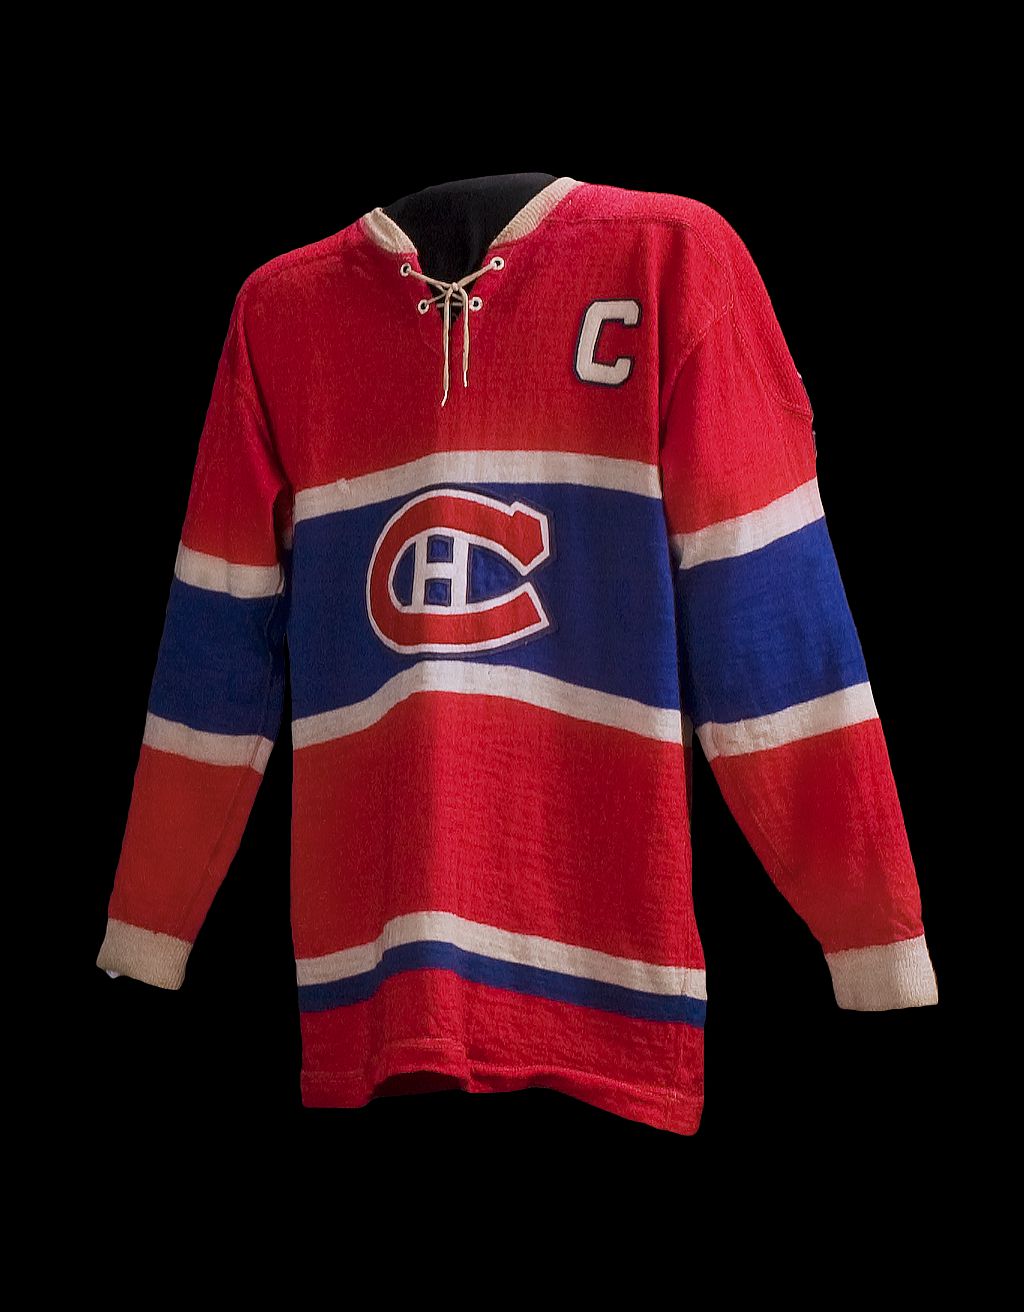 Chandail de capitaine des Canadiens de Montréal.//Montreal Canadiens captain’s jersey